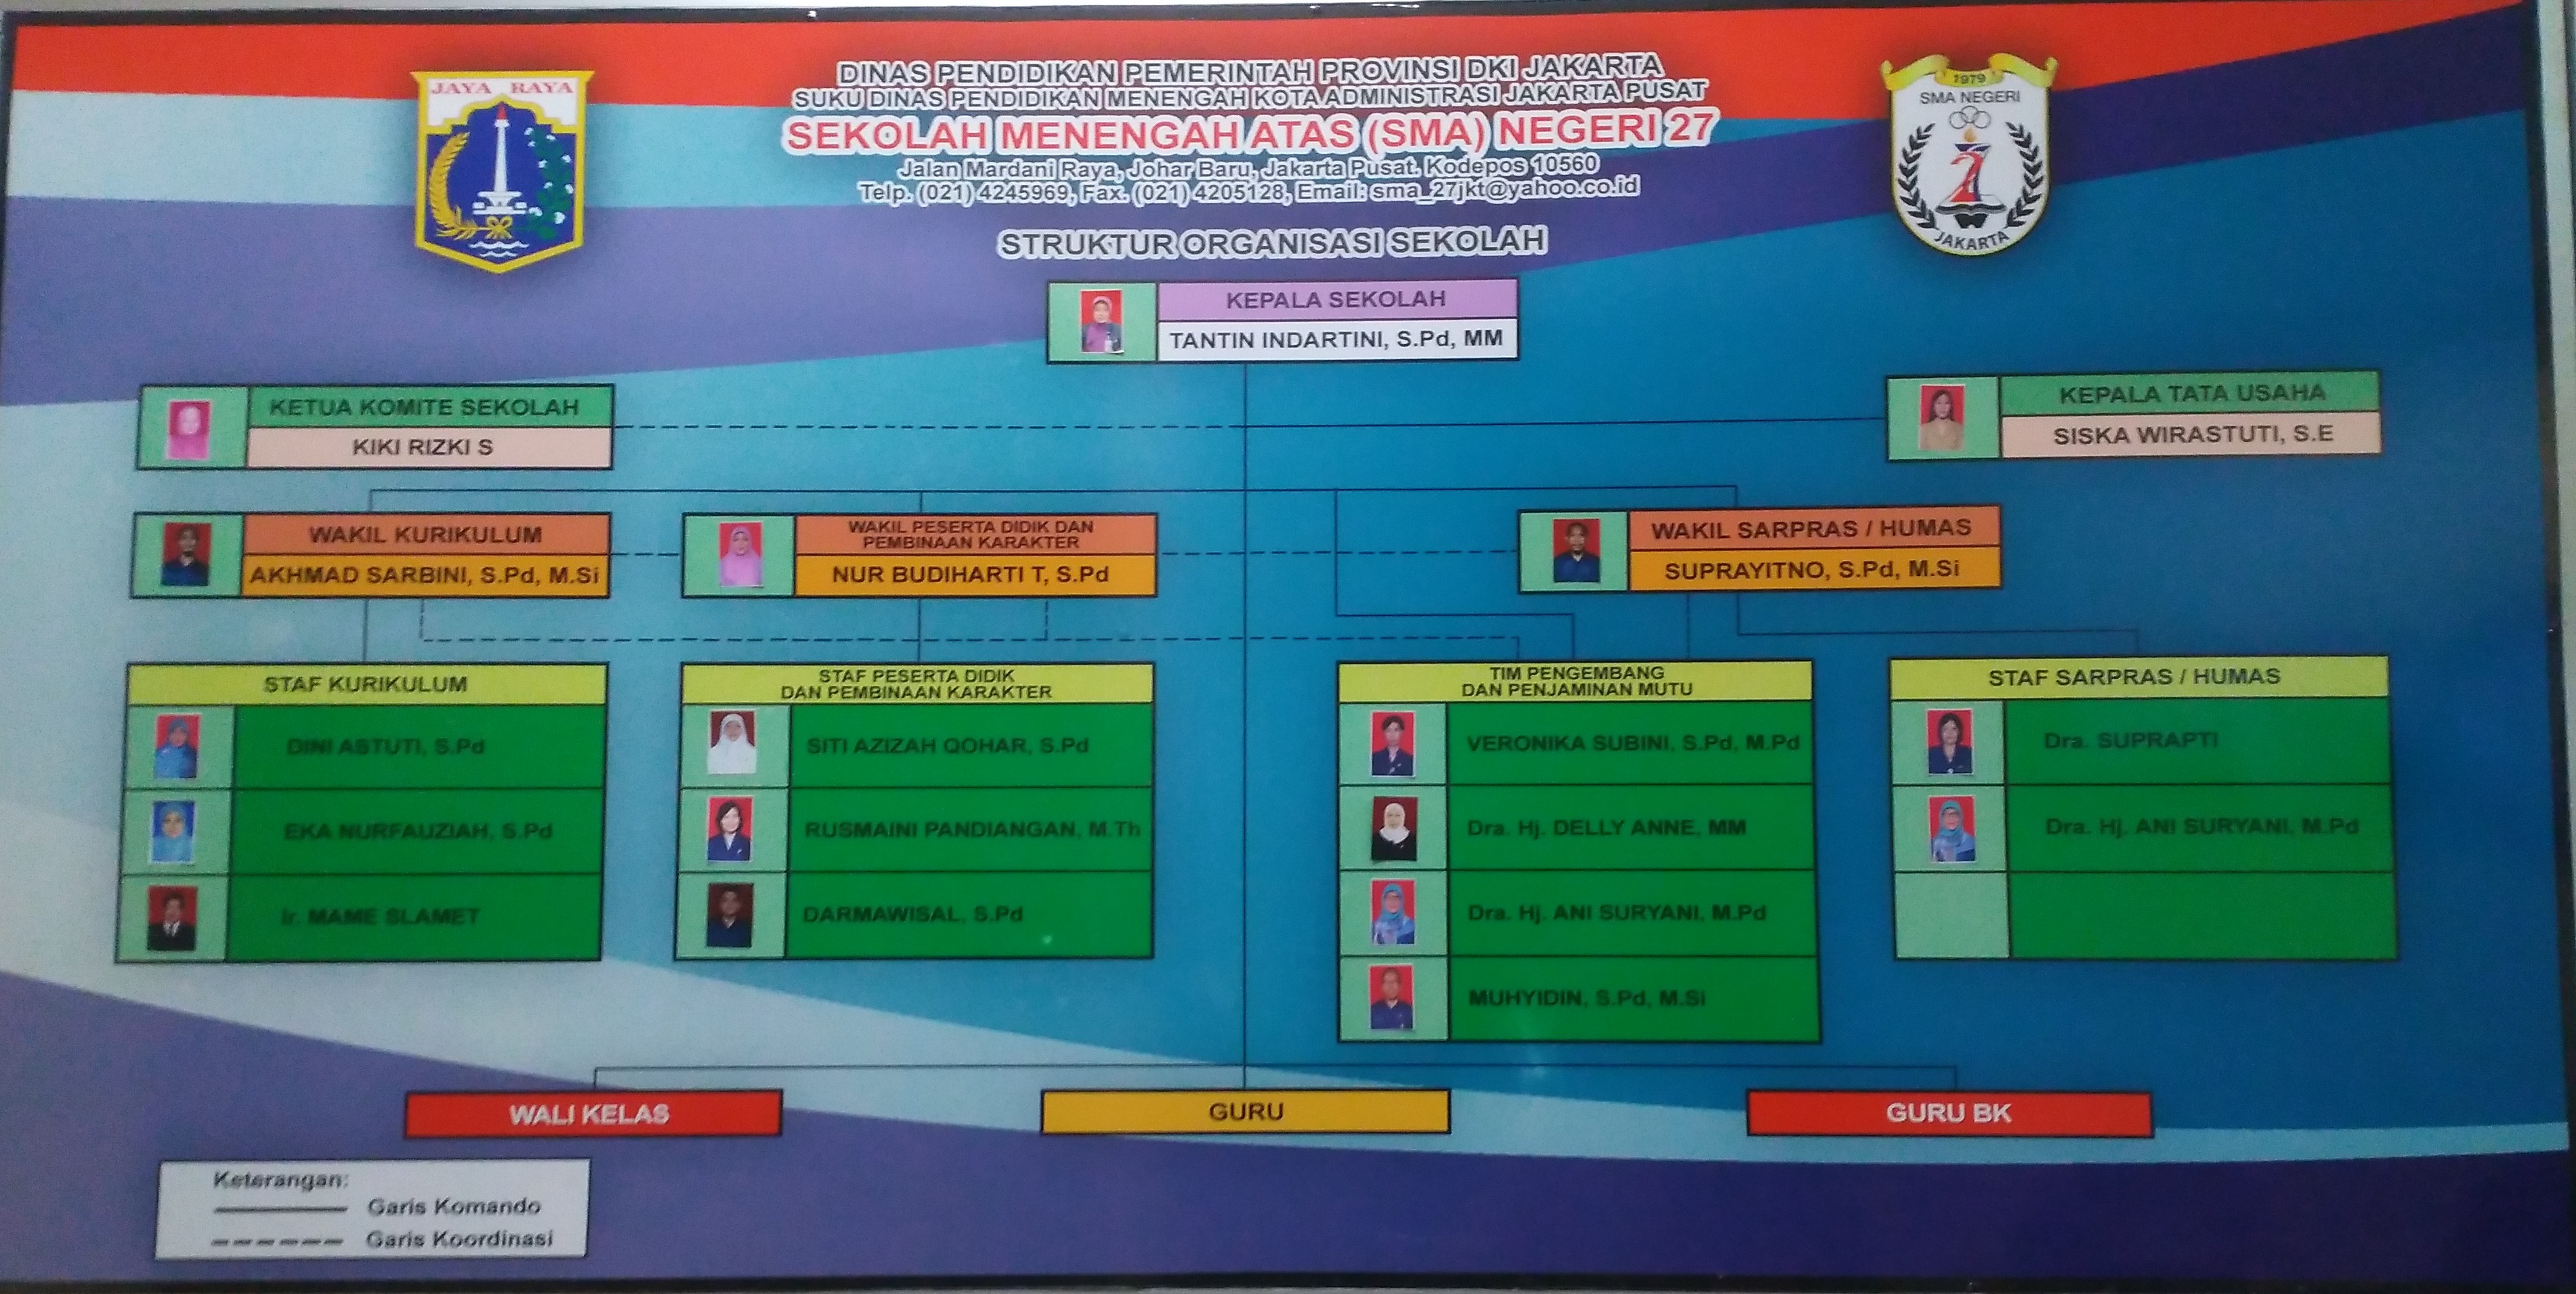 Struktur Organisasi SMAN 27 Jakarta